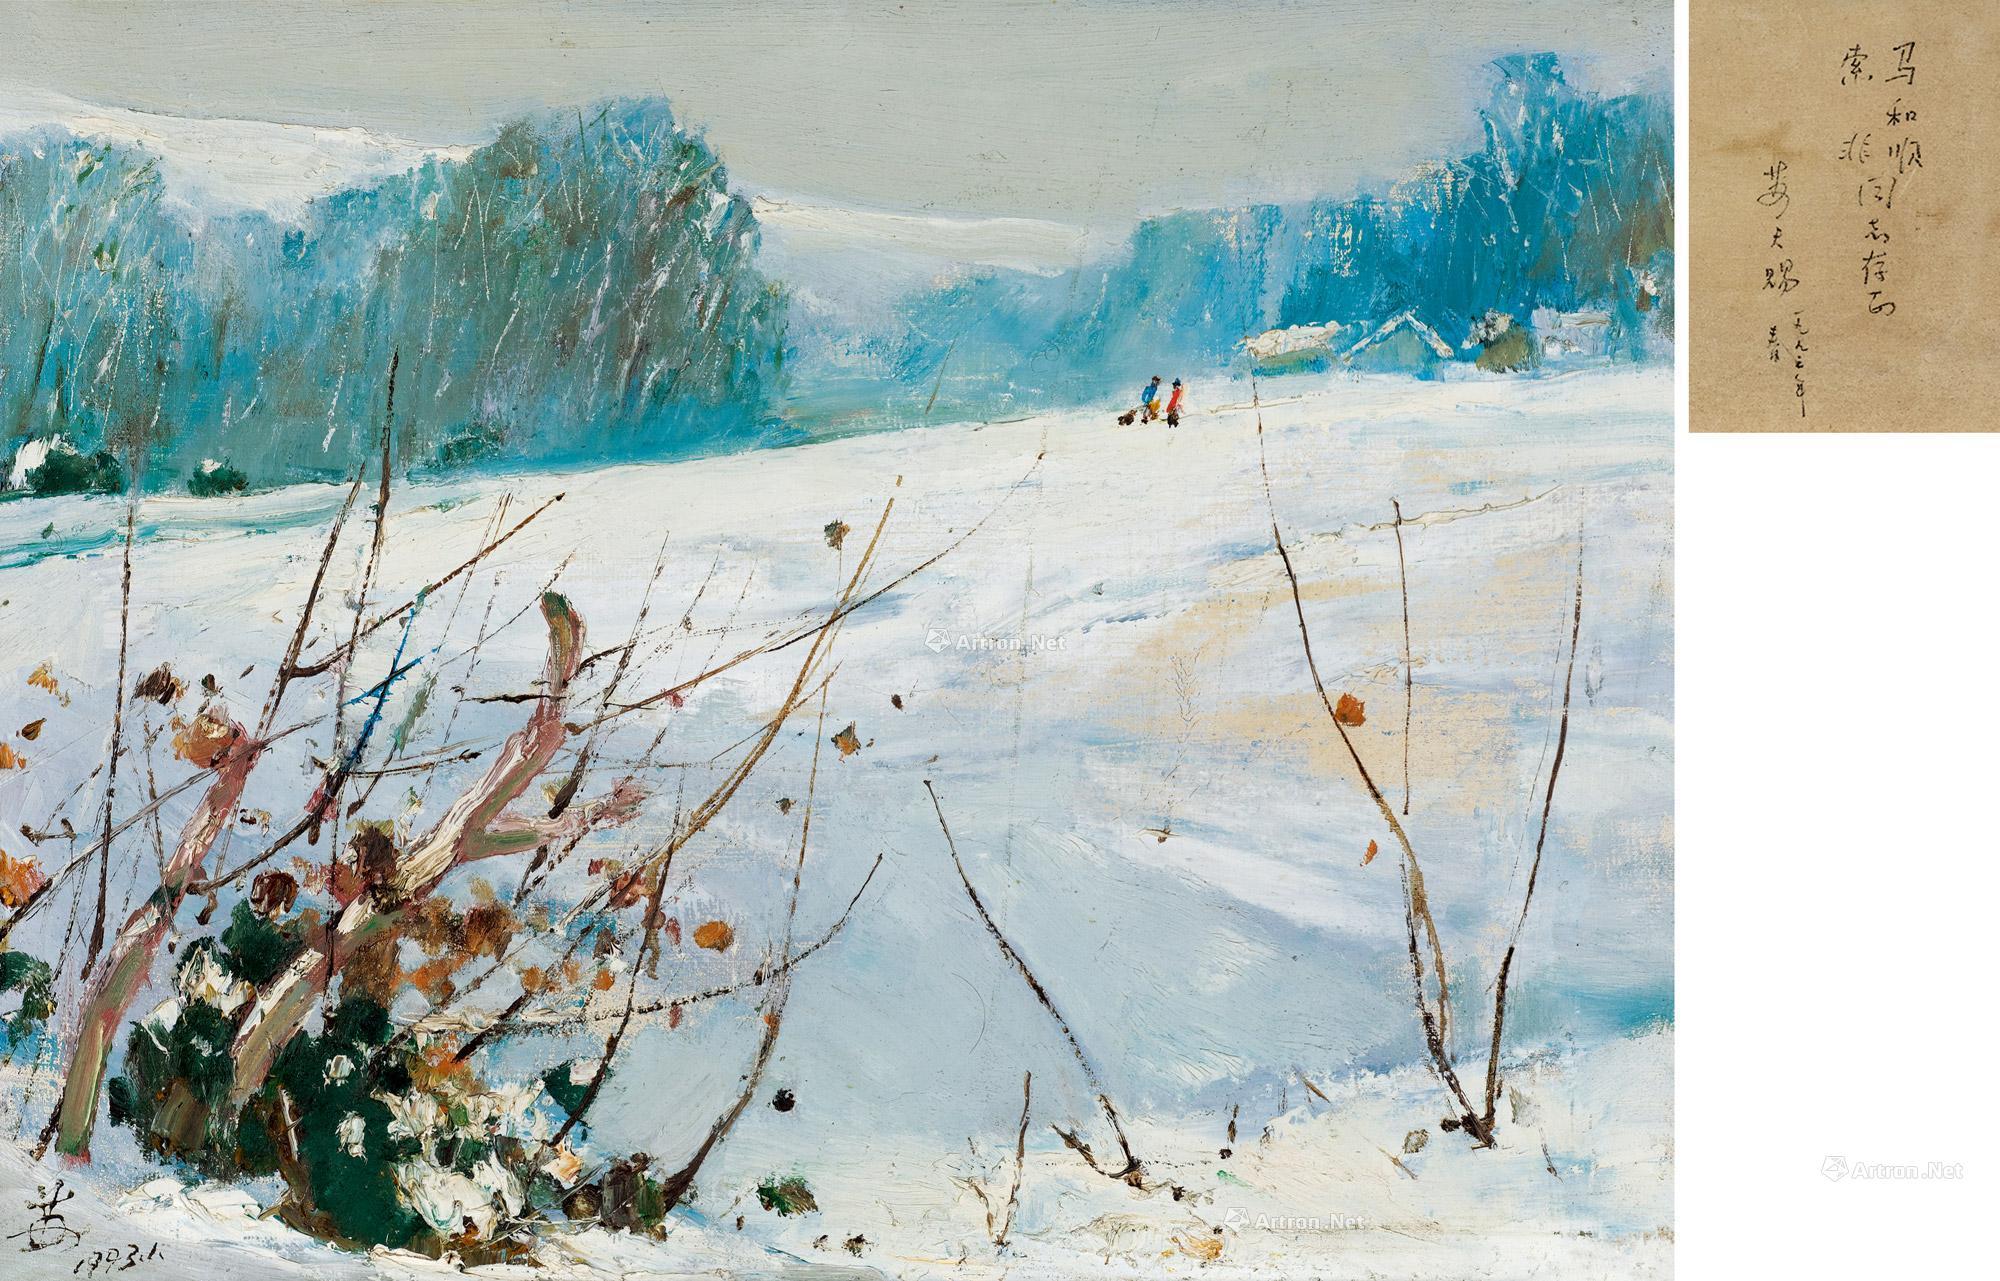  1993年作 冬日雪景 布面 油画